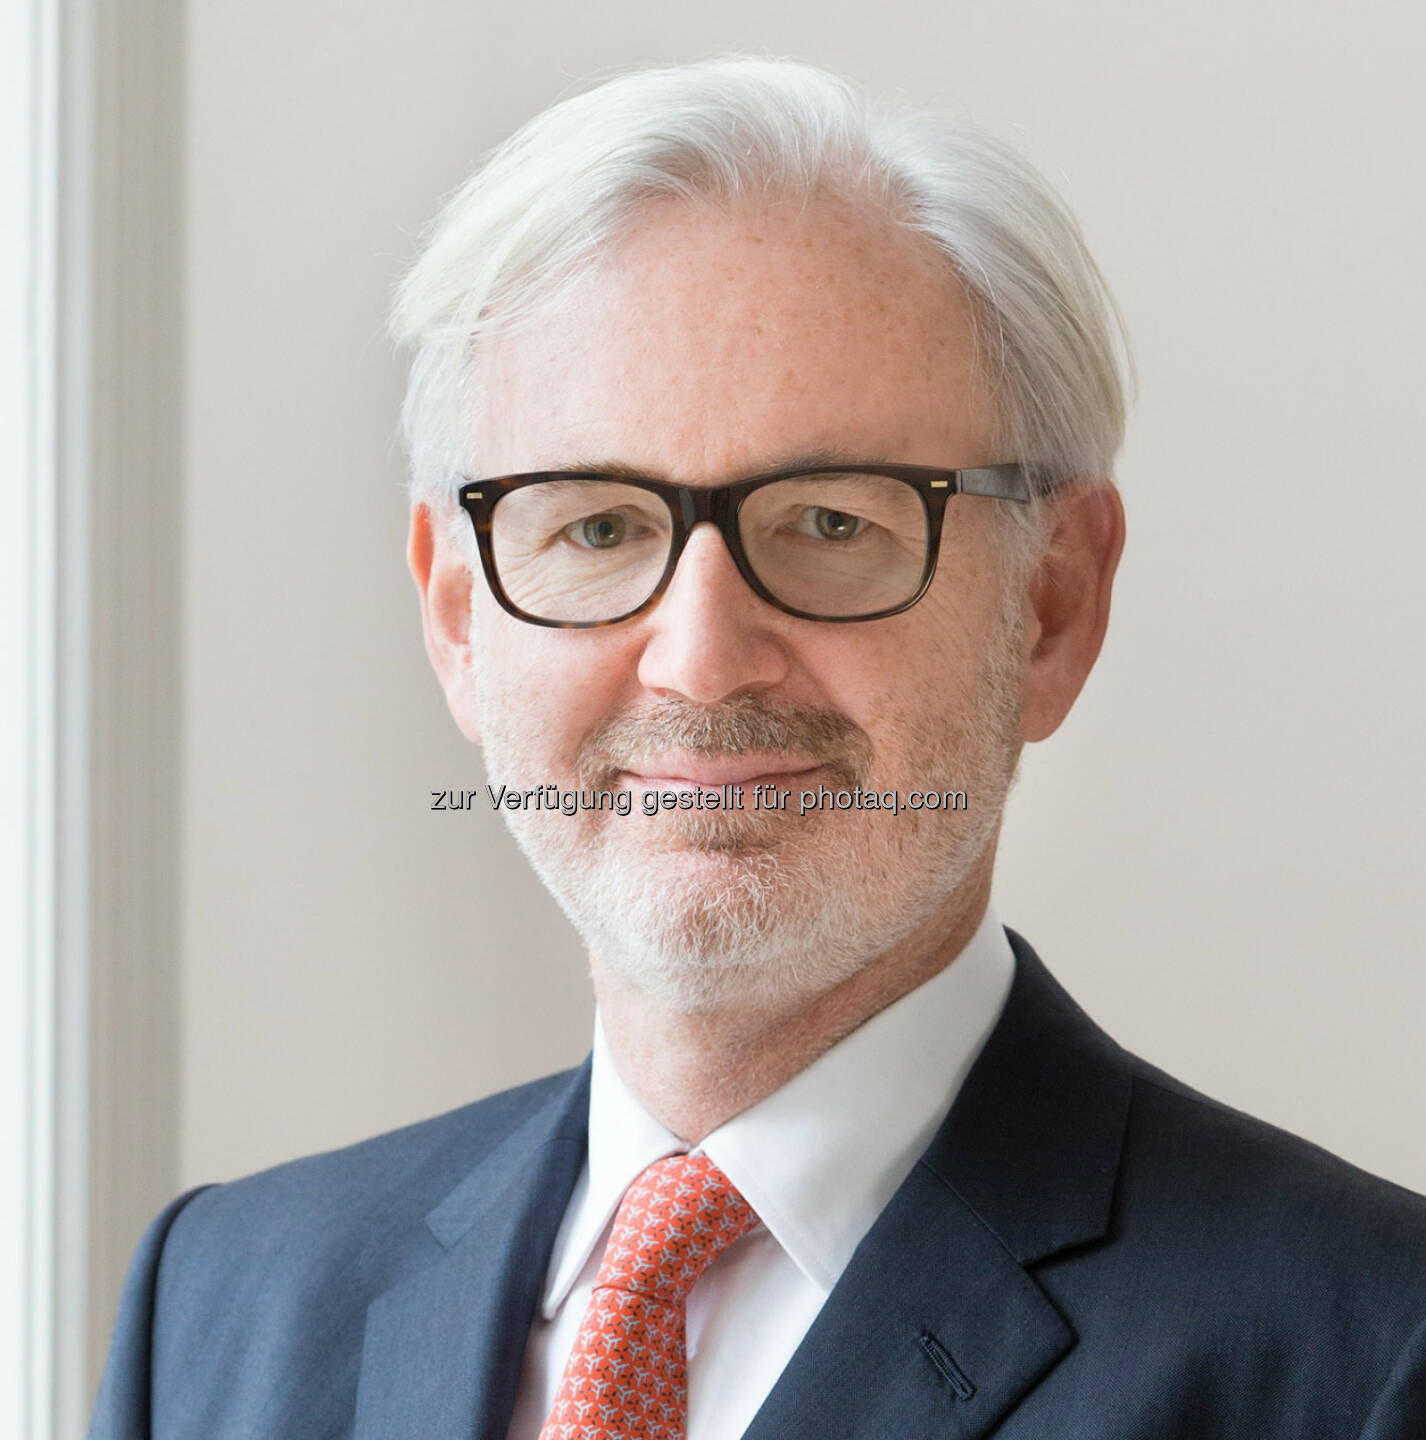 Nikolaus Pitkowitz, Gründungspartner von Graf & Pitkowitz, übernimmt mit 1. Jänner den Vorsitz der Real Estate Section der International Bar Association (IBA)